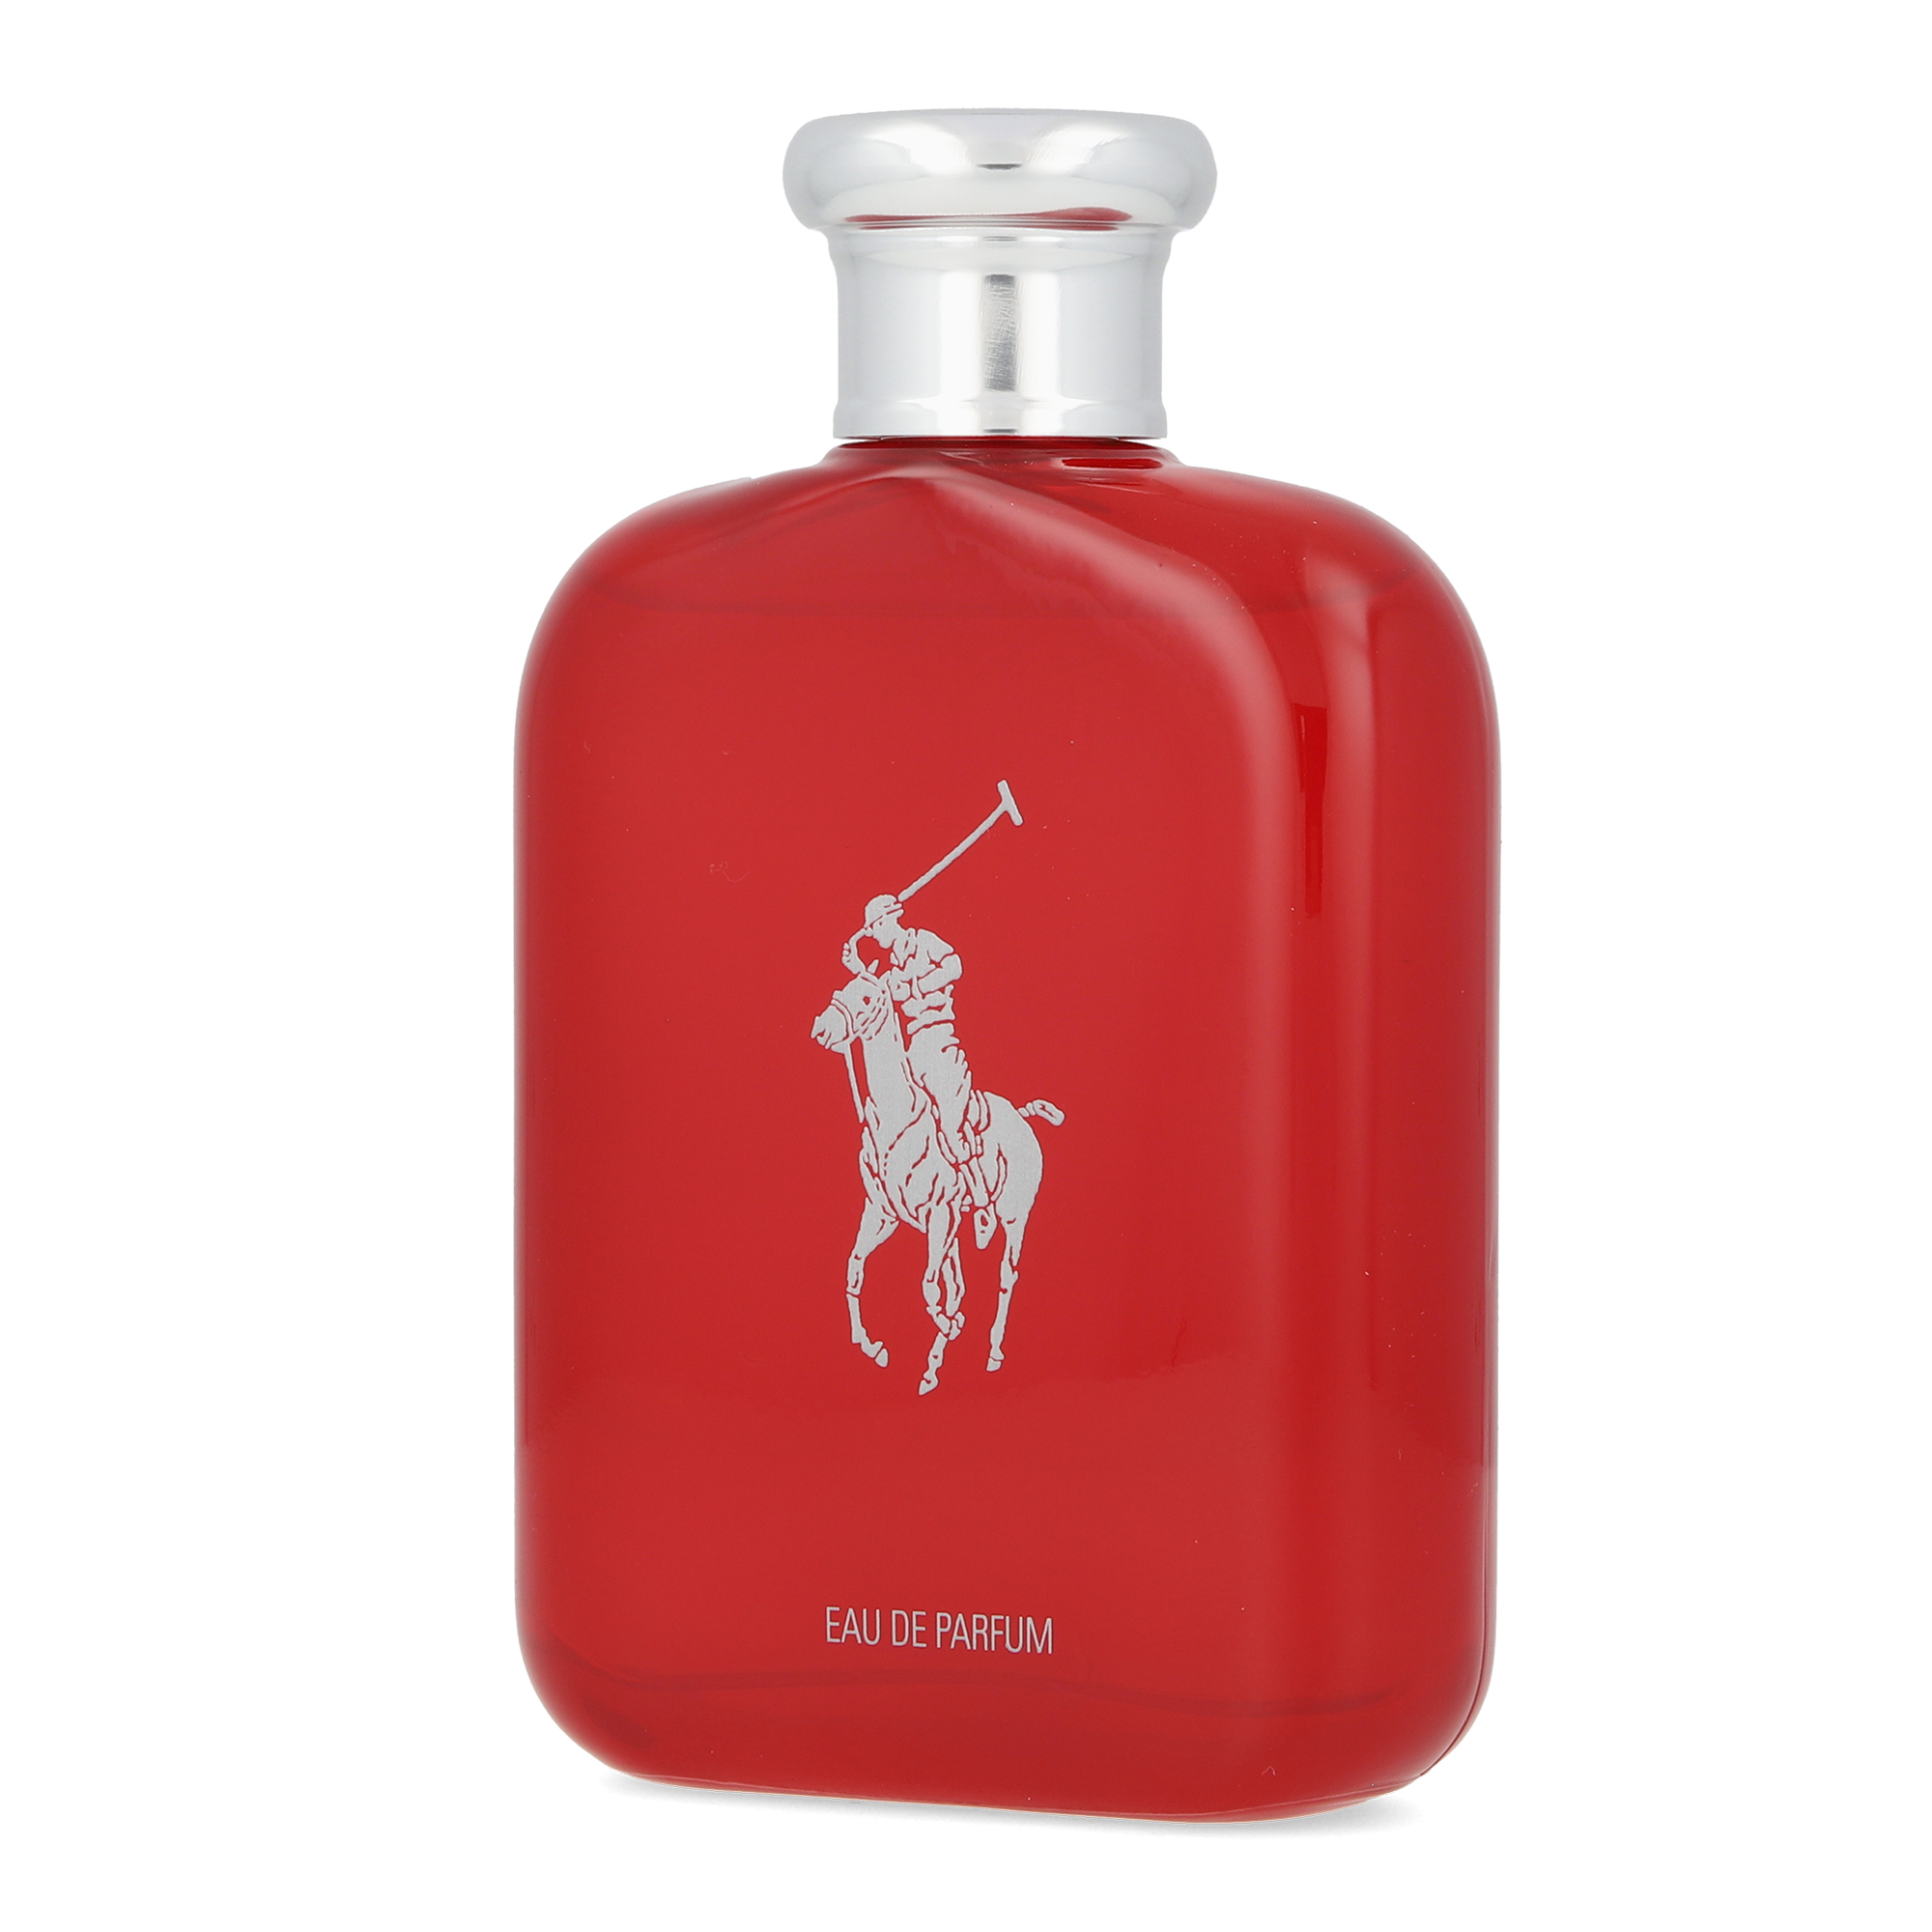 Fragancia para Caballero Polo Red 125 ml Edp Spray